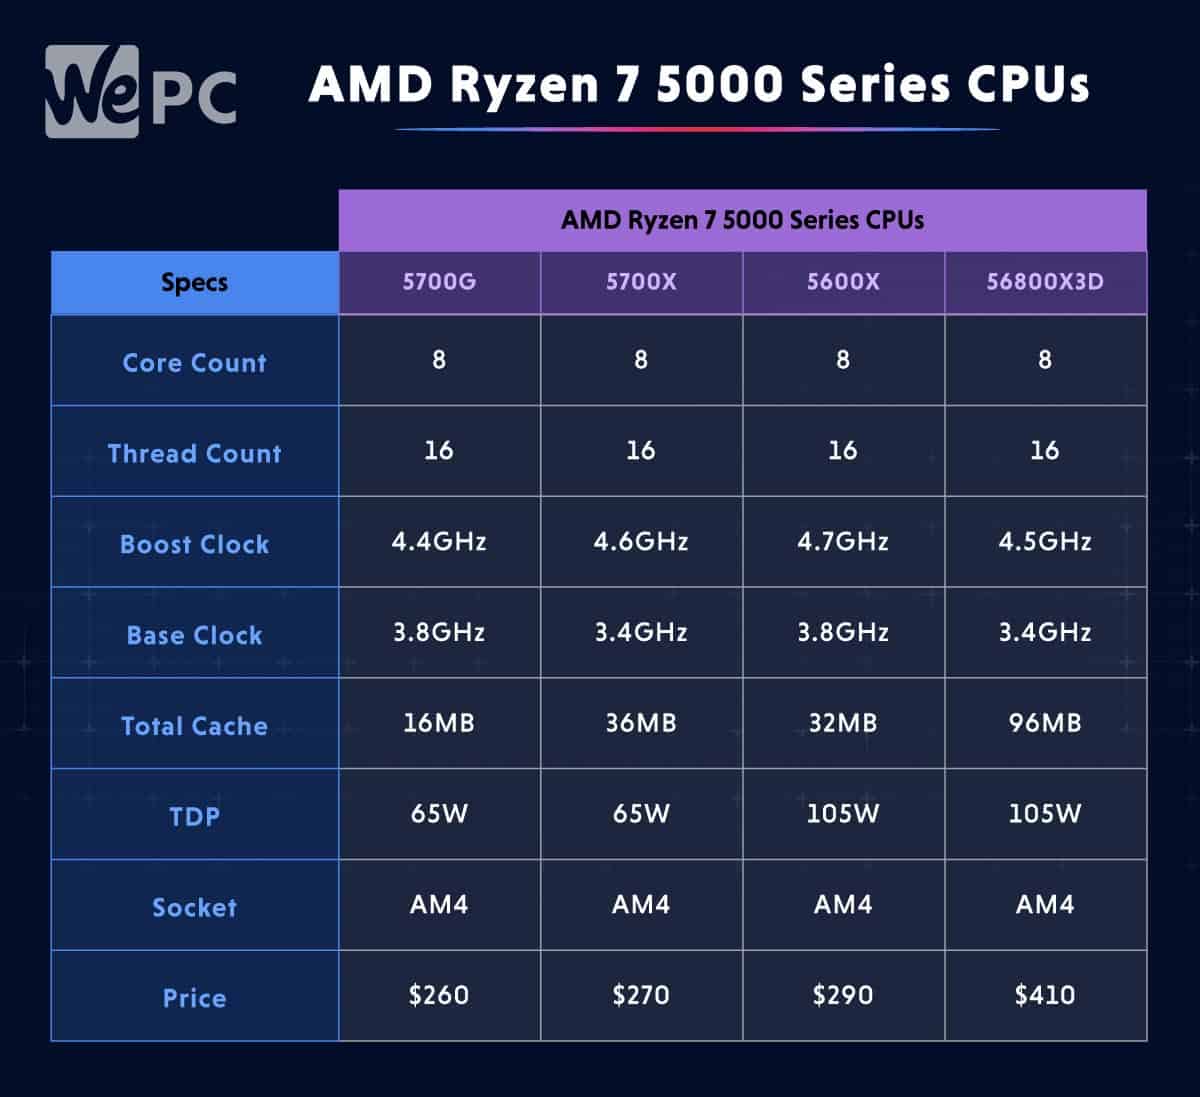 AMD Ryzen 7 5000 Series CPUs